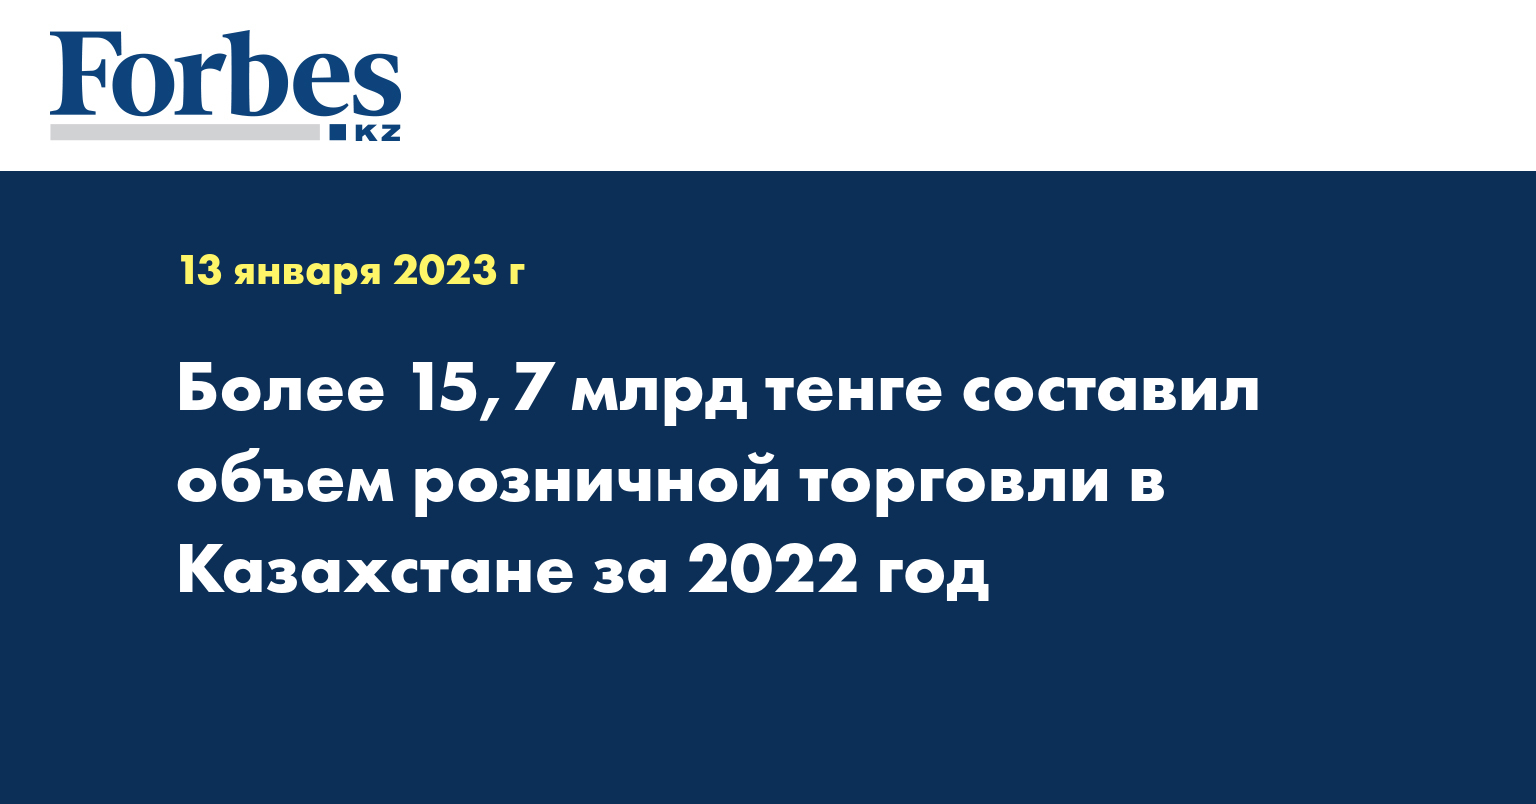 Более 15,7 млрд тенге составил объем розничной торговли в Казахстане за 2022 год